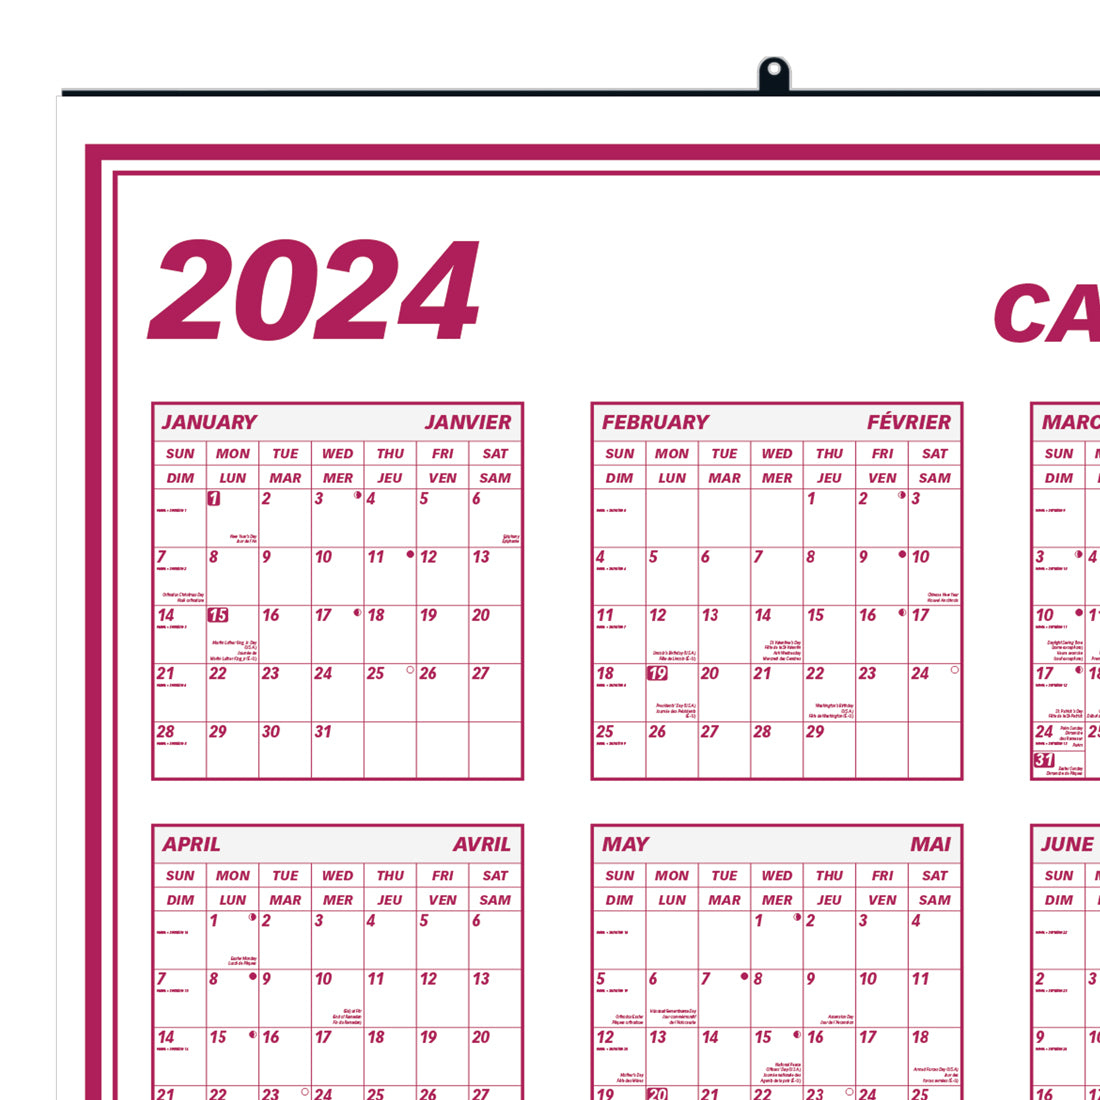 Laminated Cal-Plan Yearly Wall Calendar 2024, English